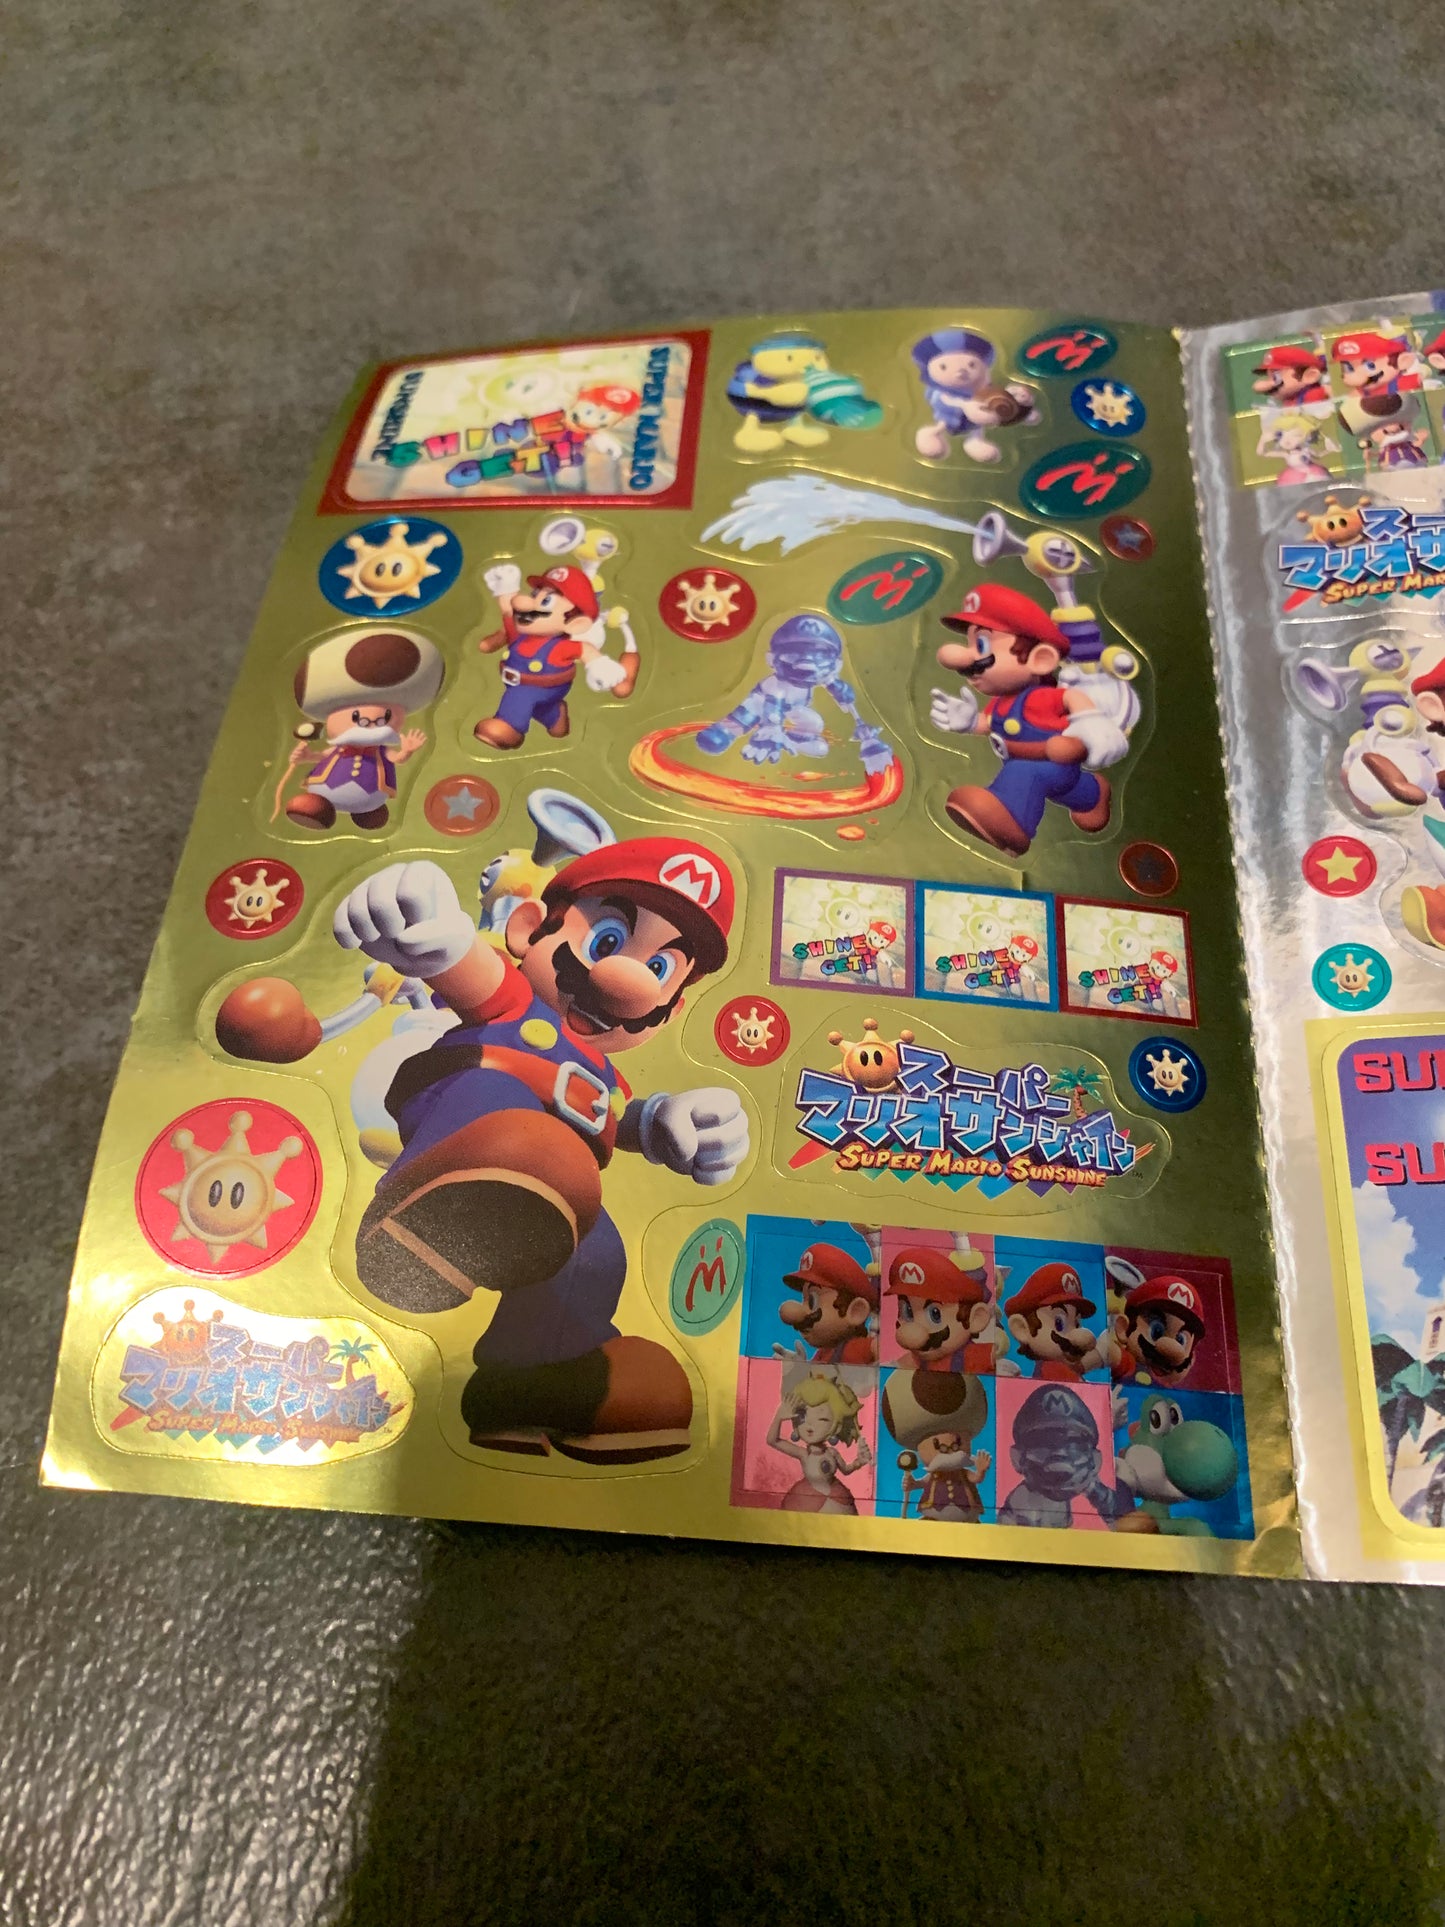 Super Mario Sunshine Promo Stickers